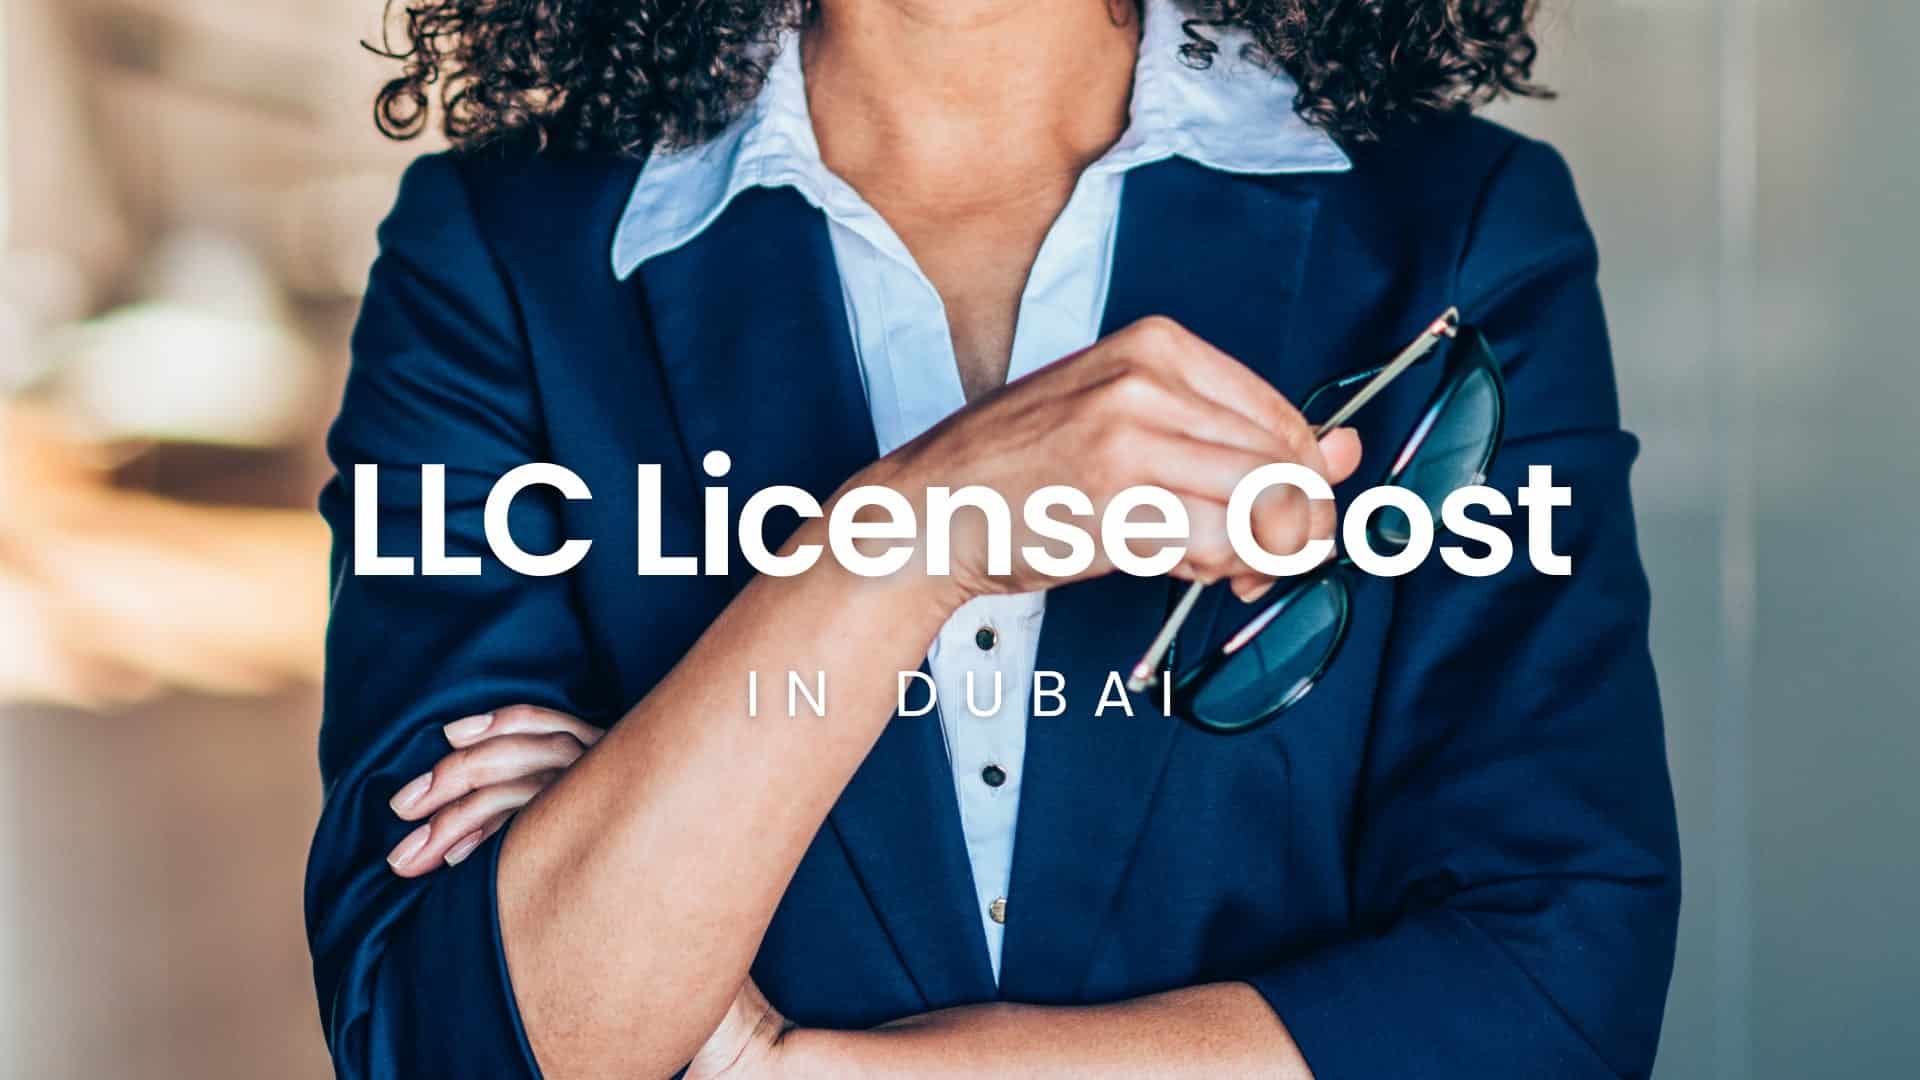 llc license cost in dubai